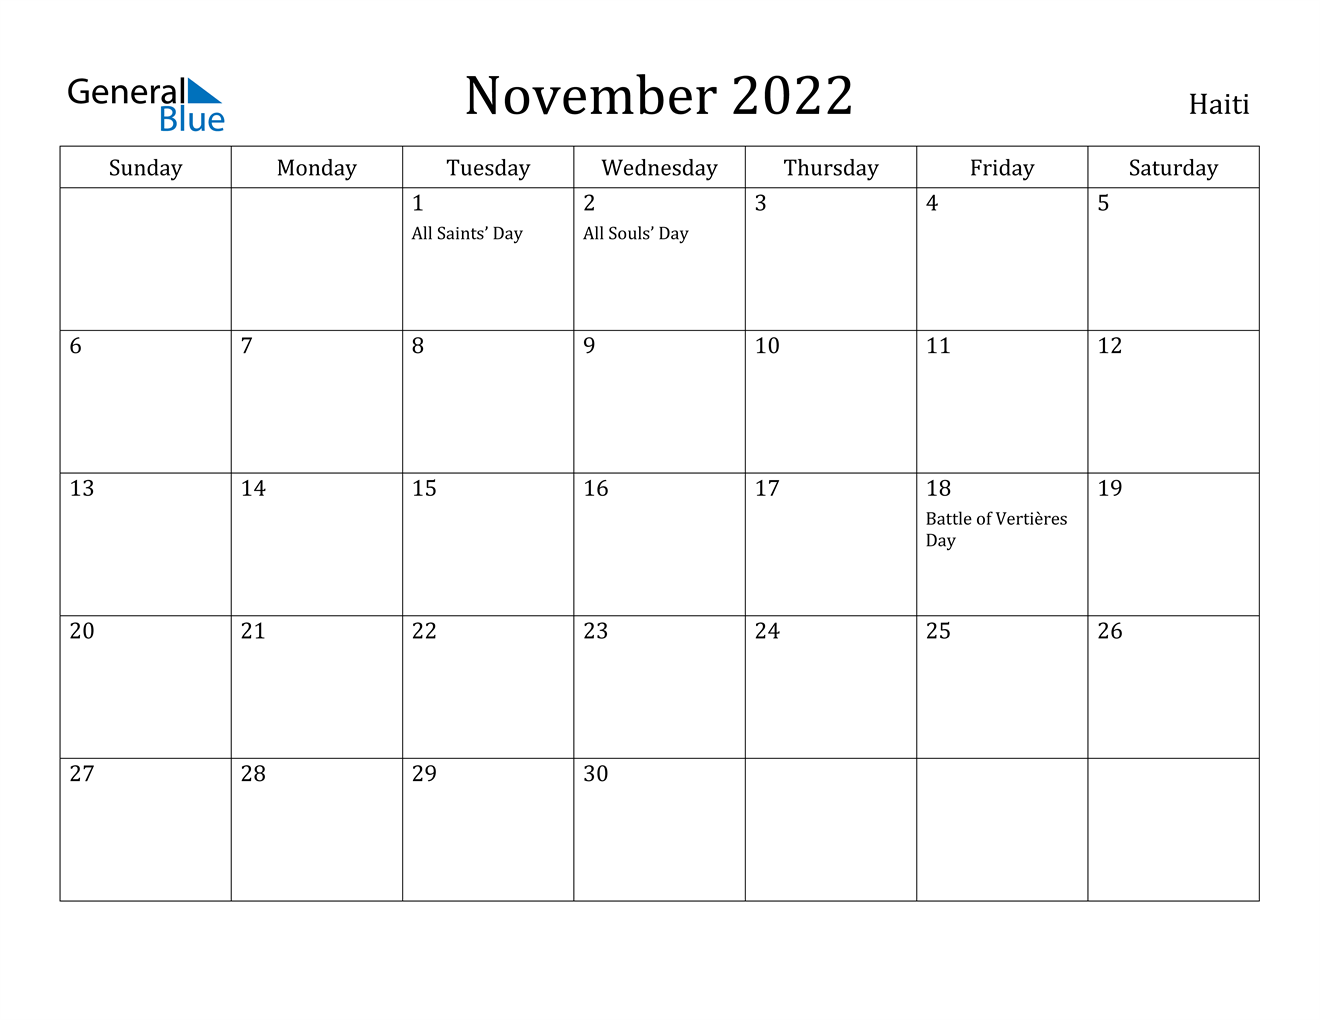 november 2022 calendar haiti